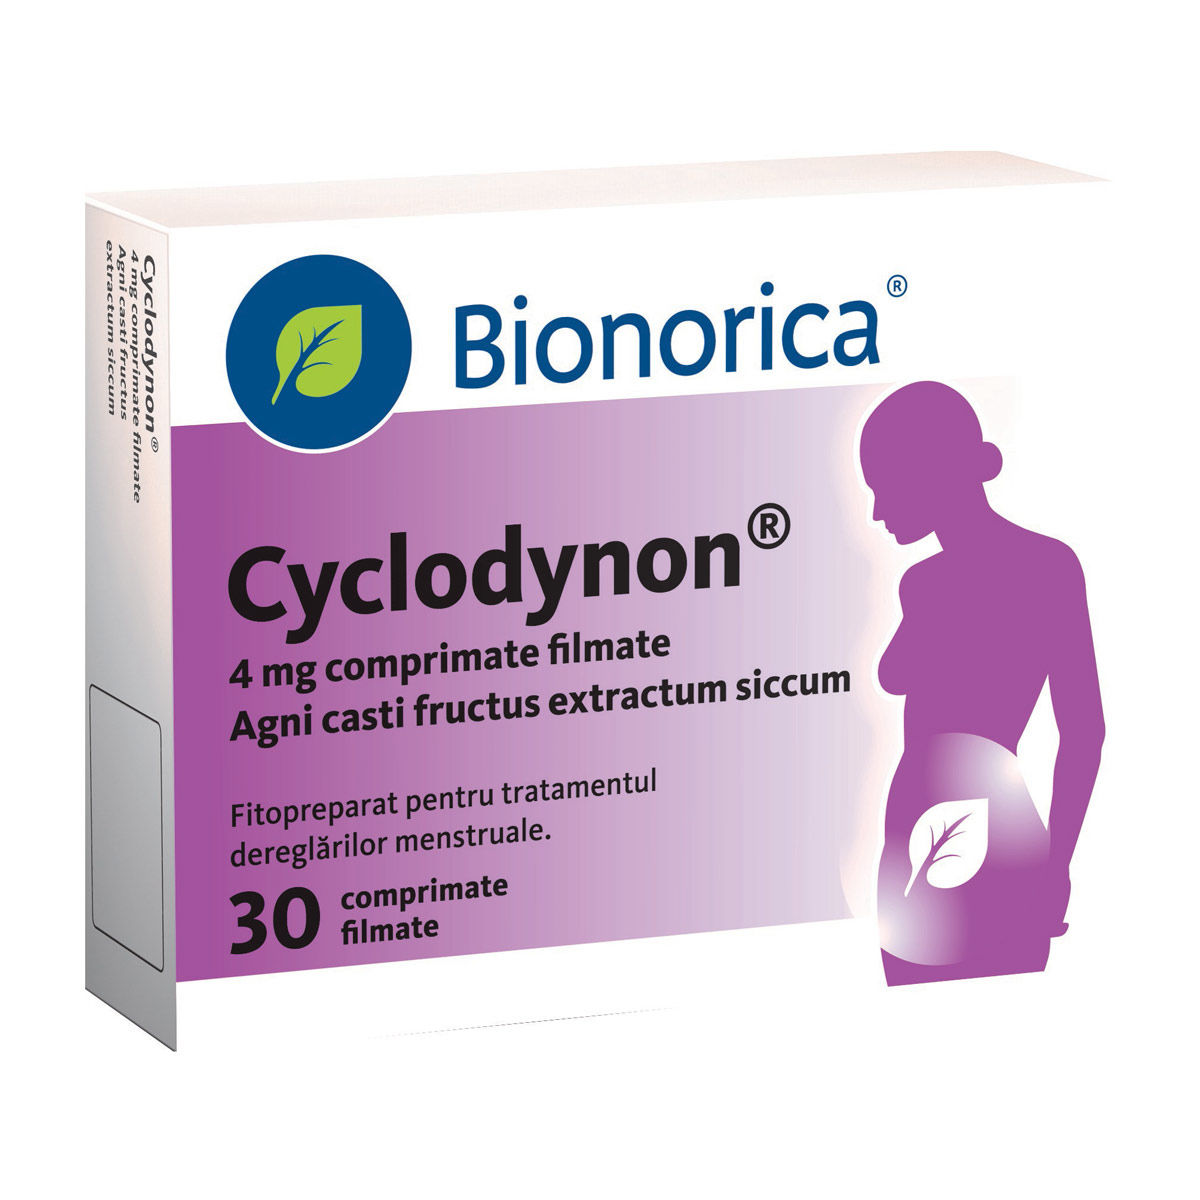 Tratamente - Cyclodynon, 30 comprimate filmate, Bionorica, sinapis.ro